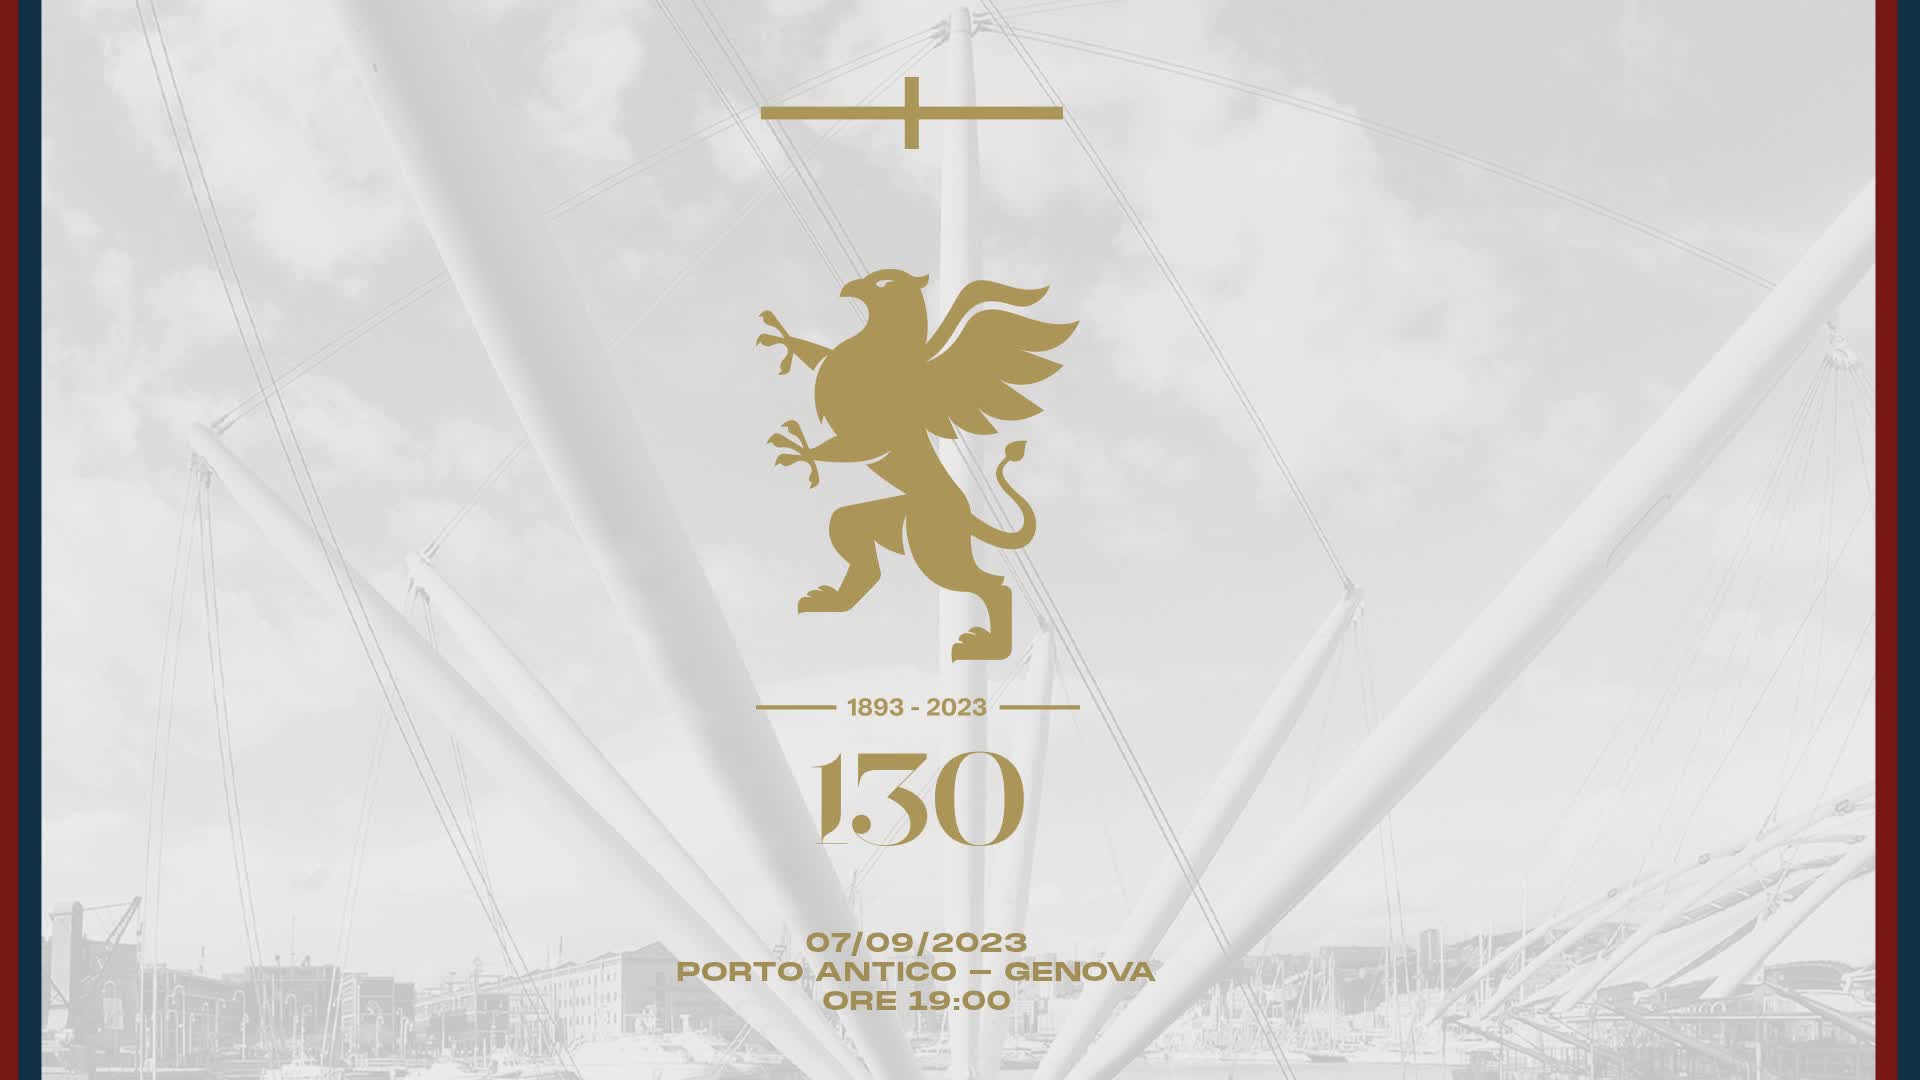 Genoa, il 7 settembre il 130° compleanno: festa al Porto Antico con i calciatori, iniziative in tutta la città